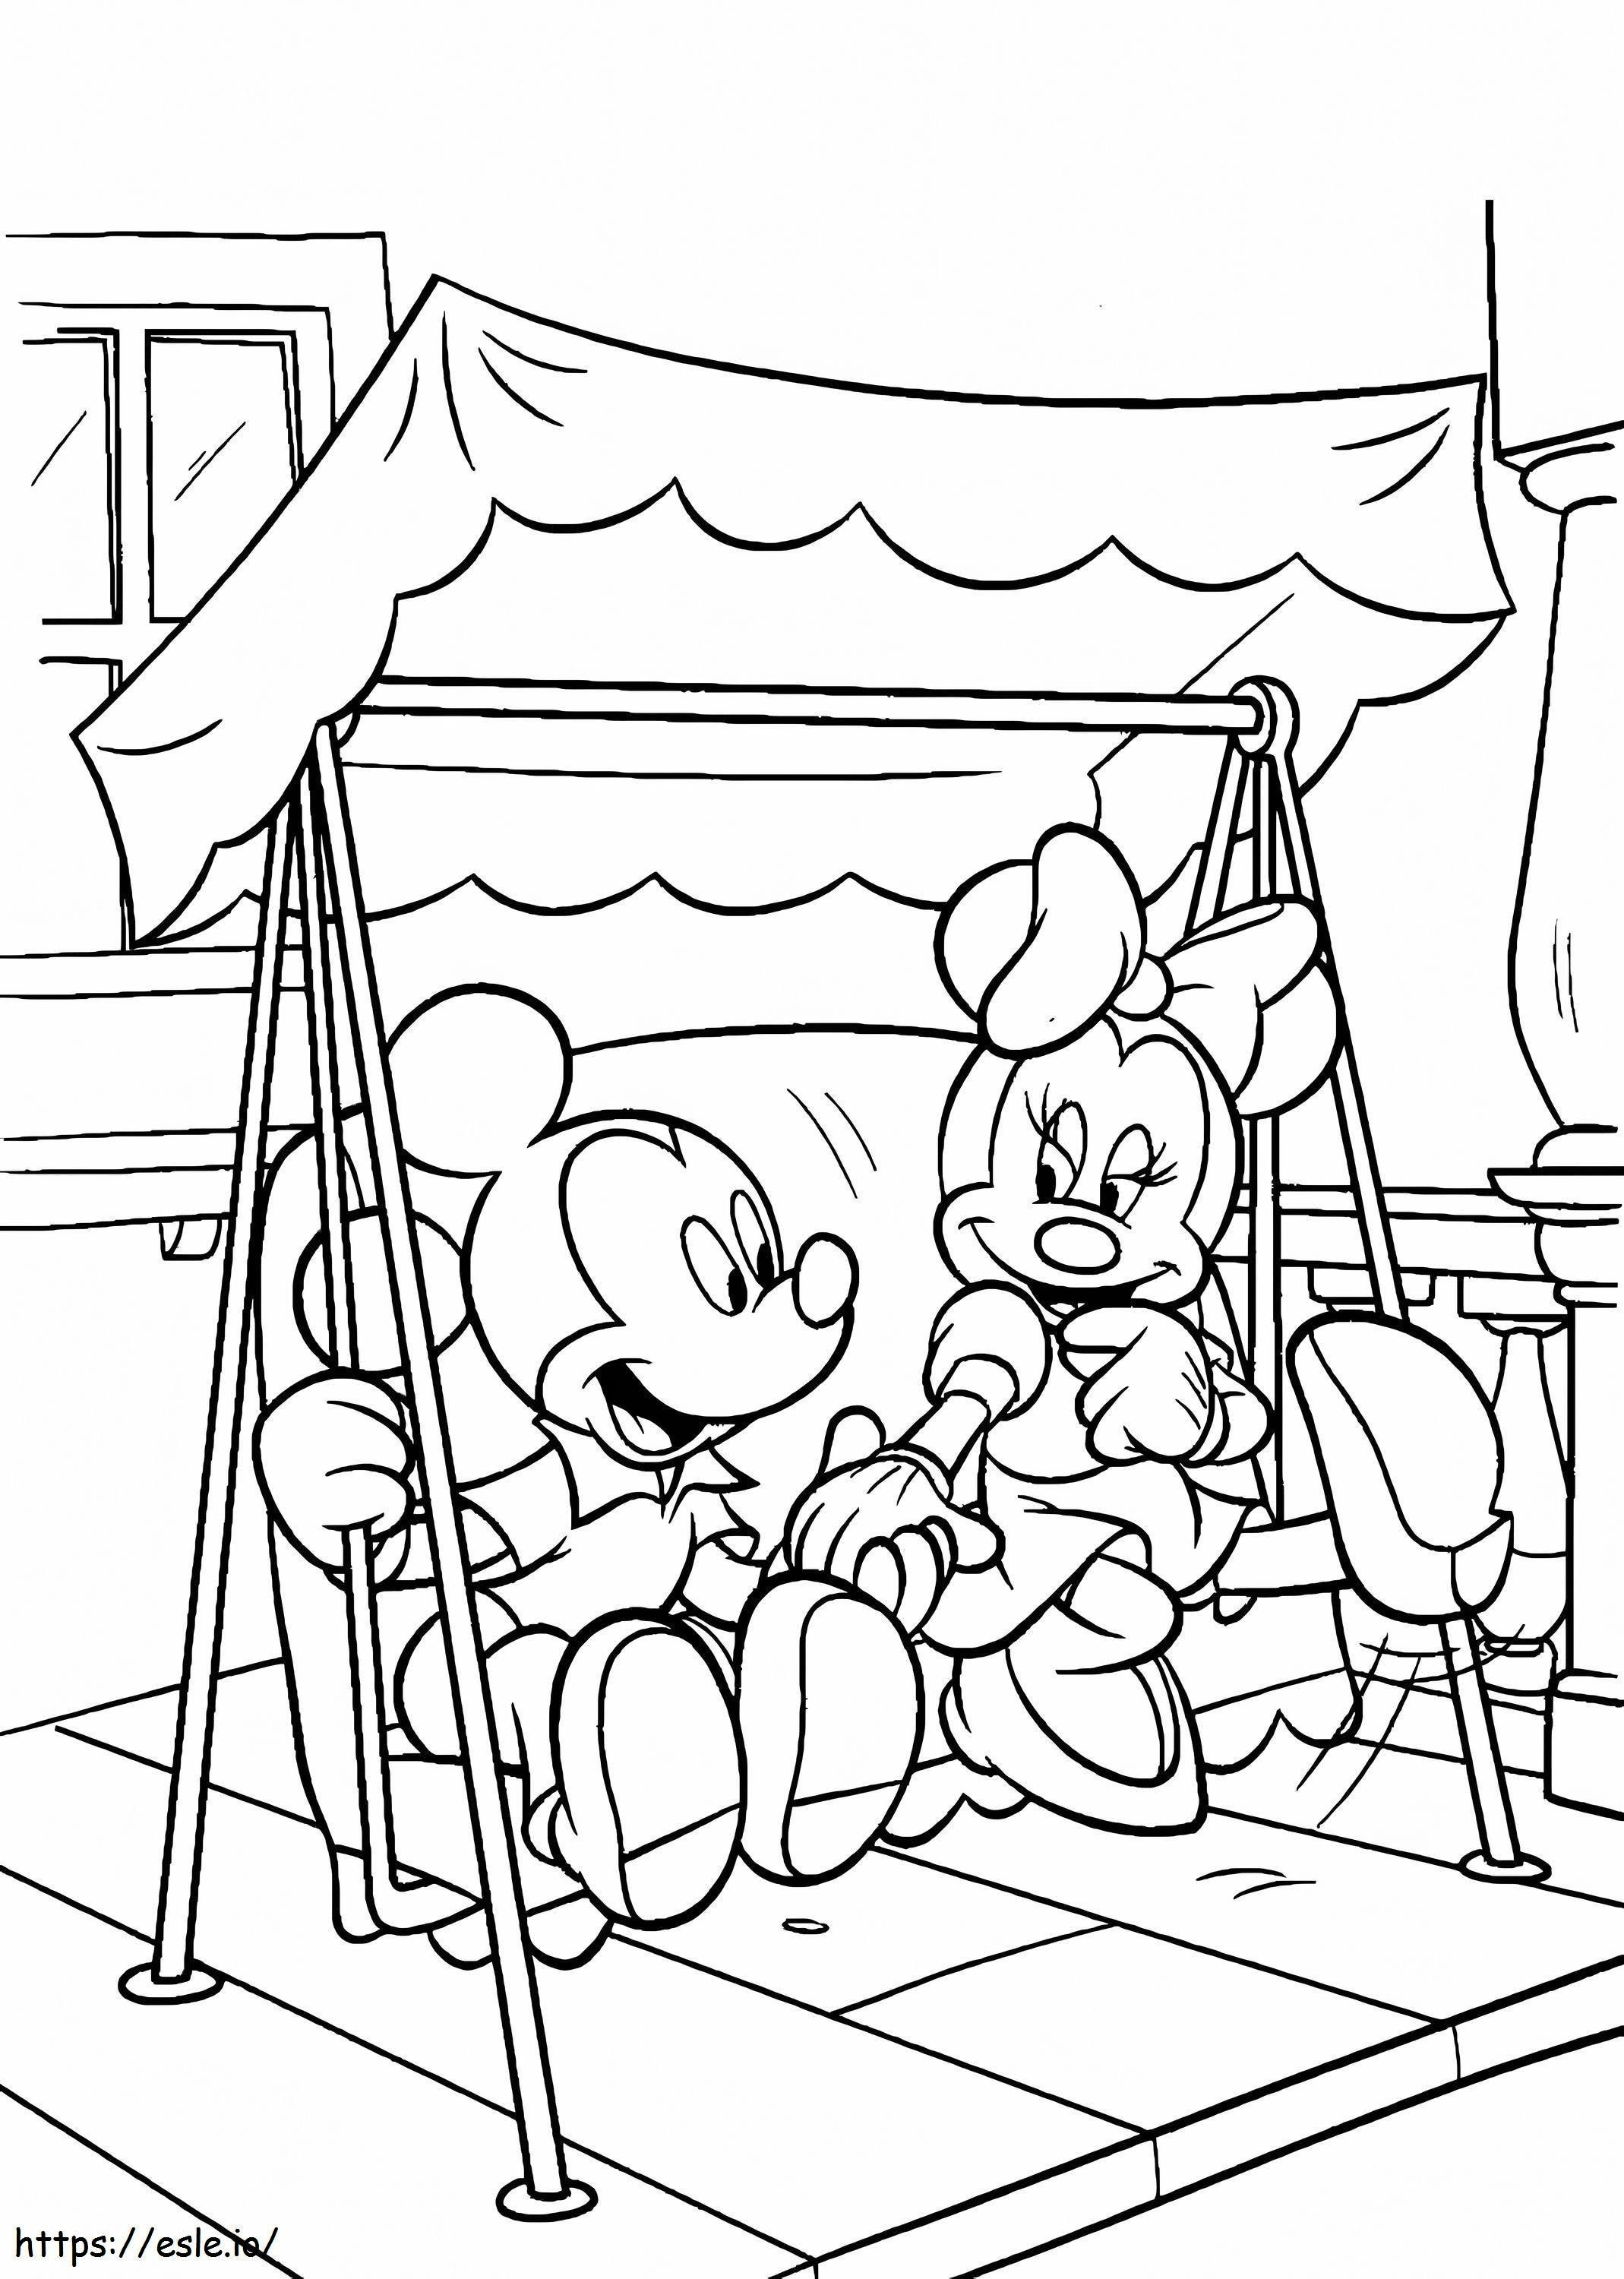 Topolino e Minnie giocano sulle altalene da colorare